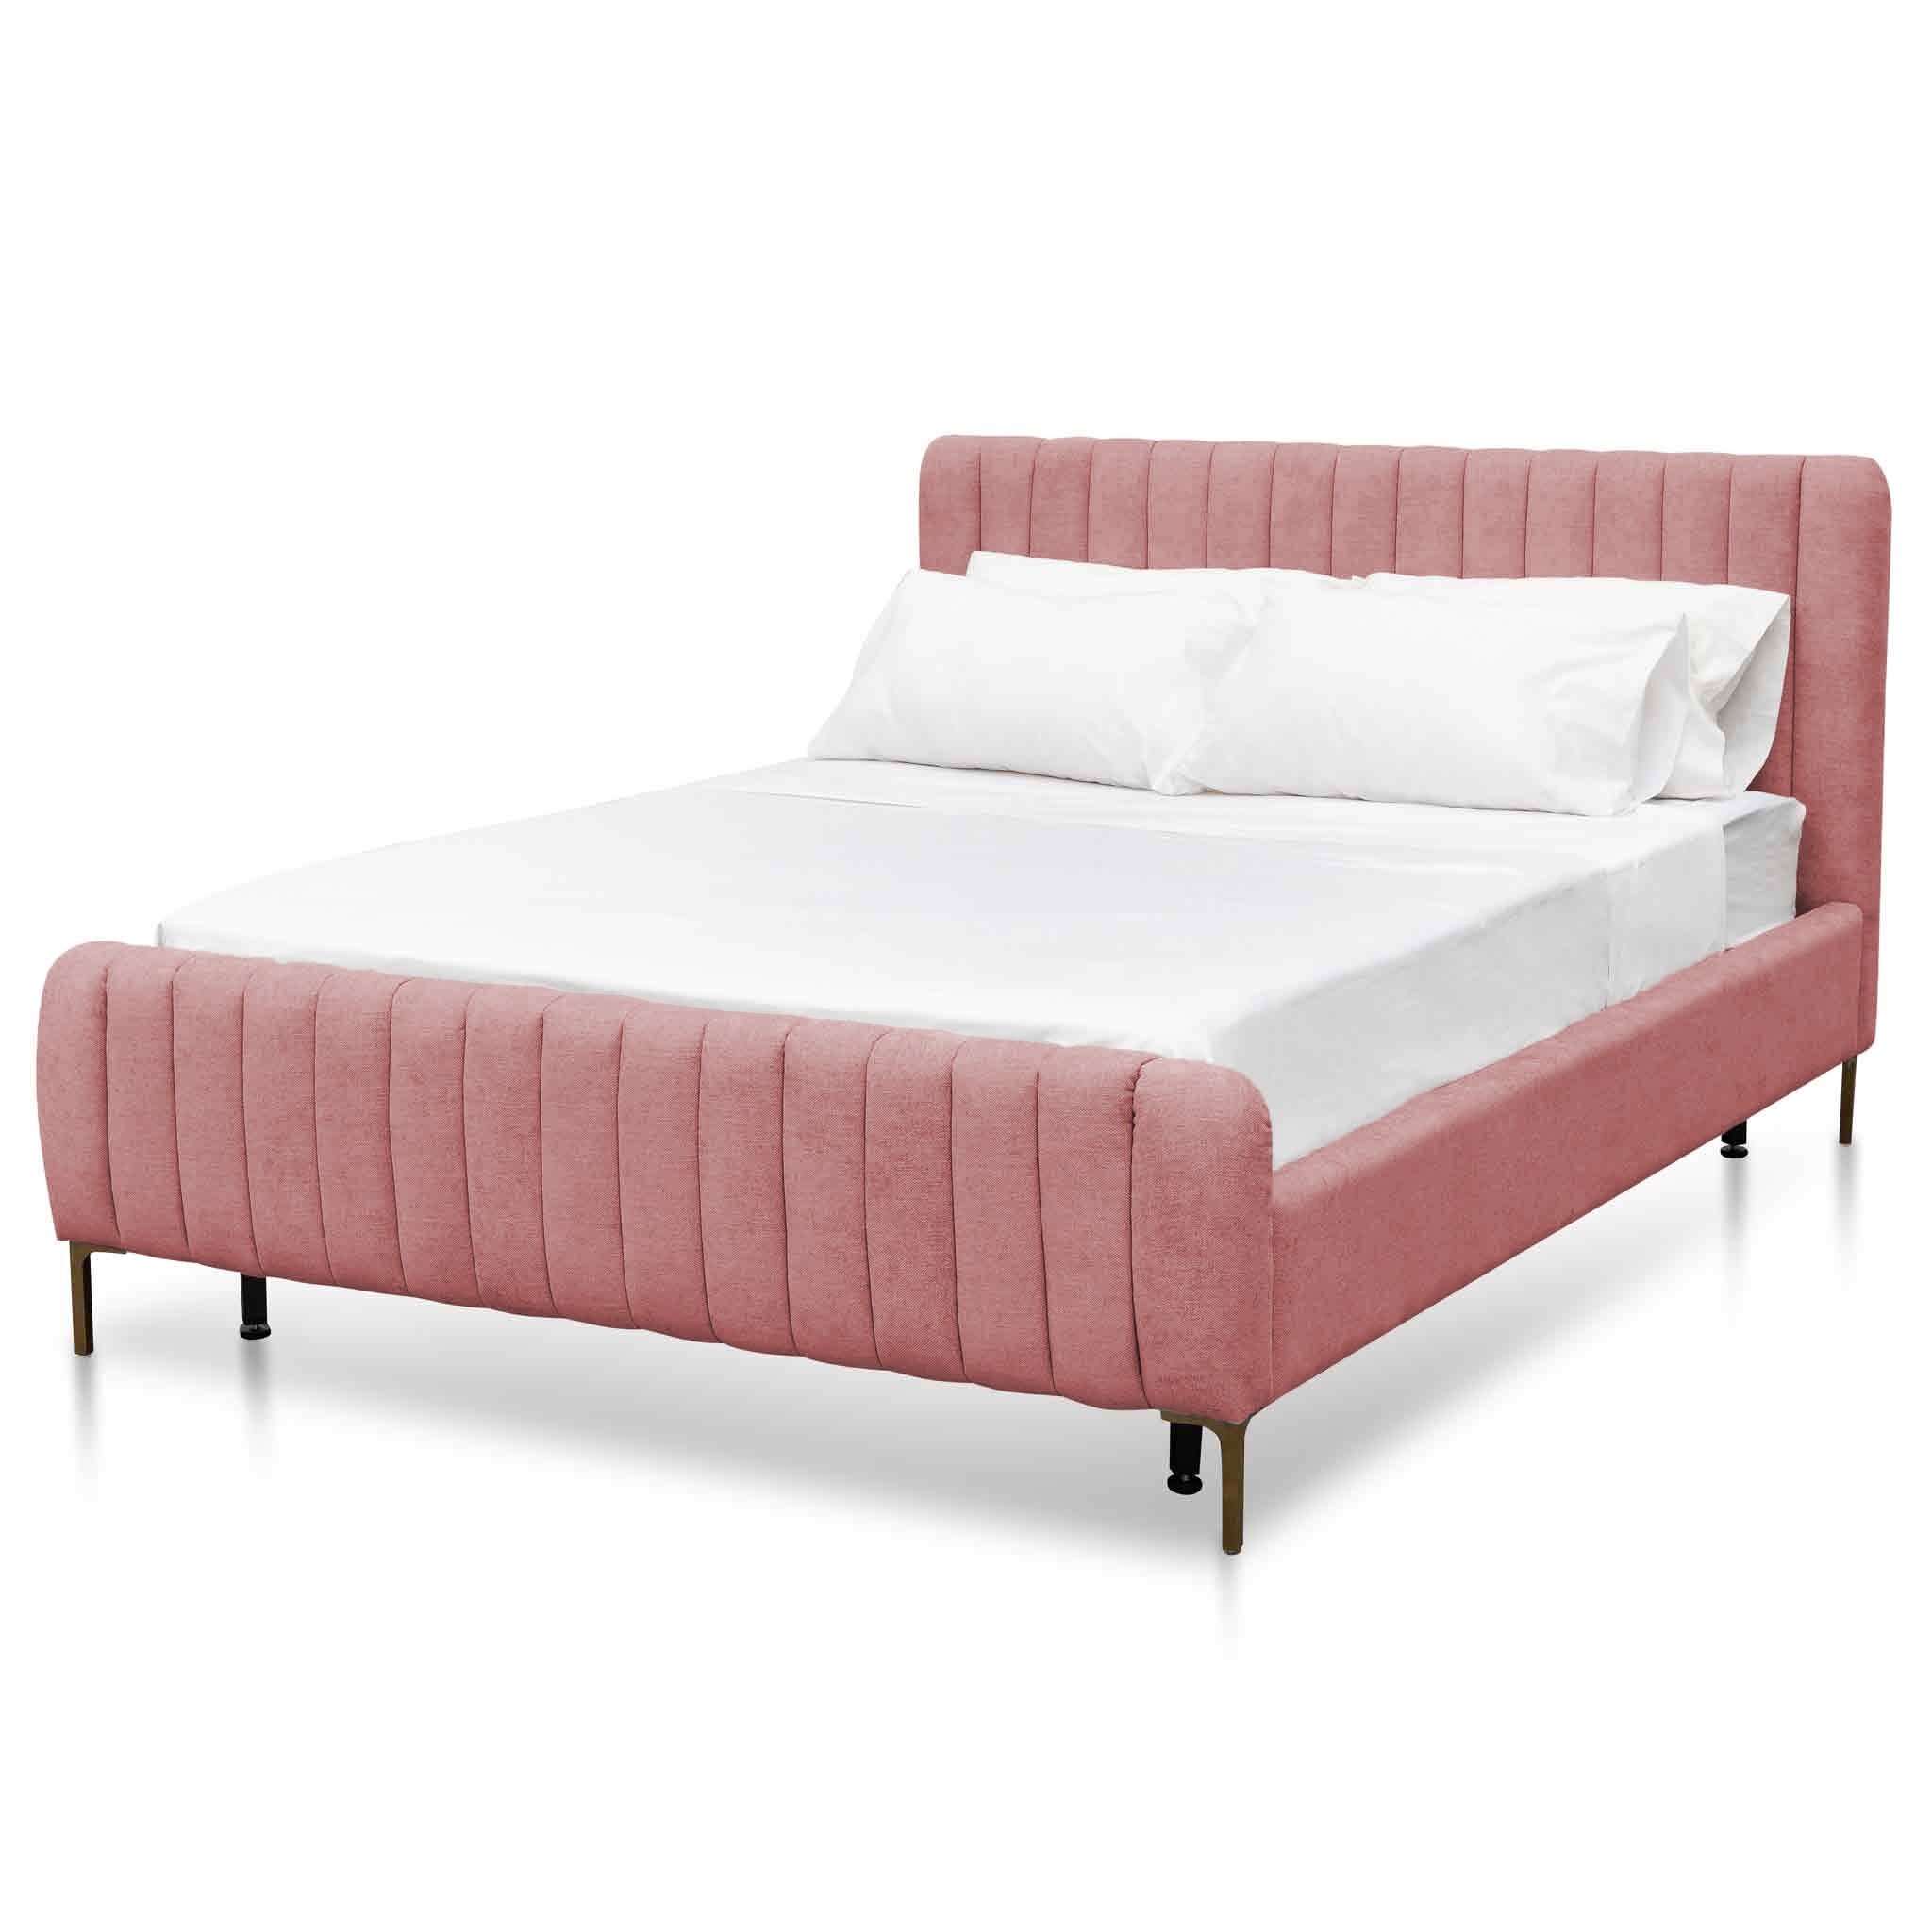 Kai King Bed Frame - Blush Pink - Beds